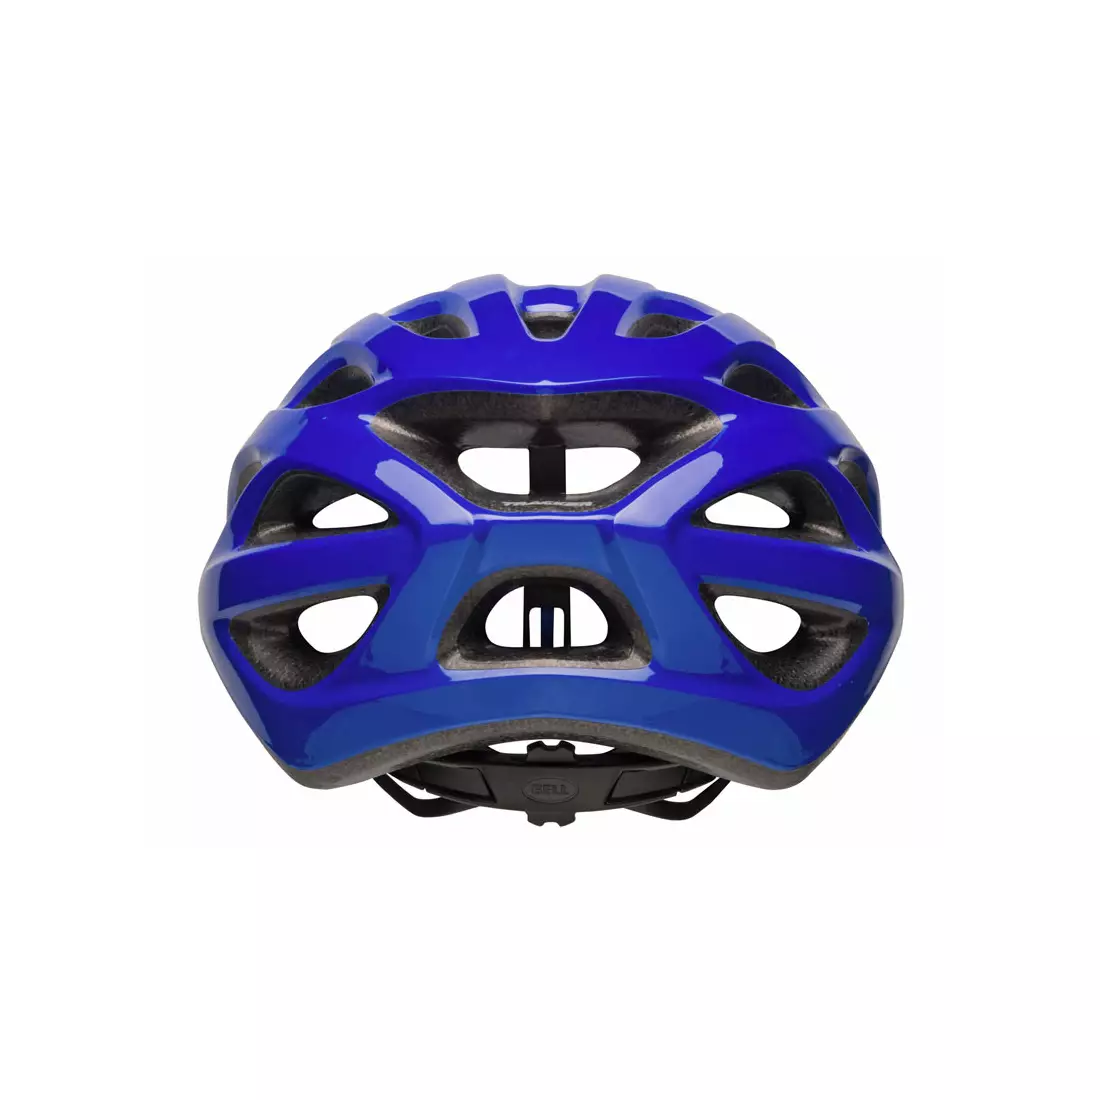 BELL TRACKER - BEL-7087828 - blue bicycle helmet